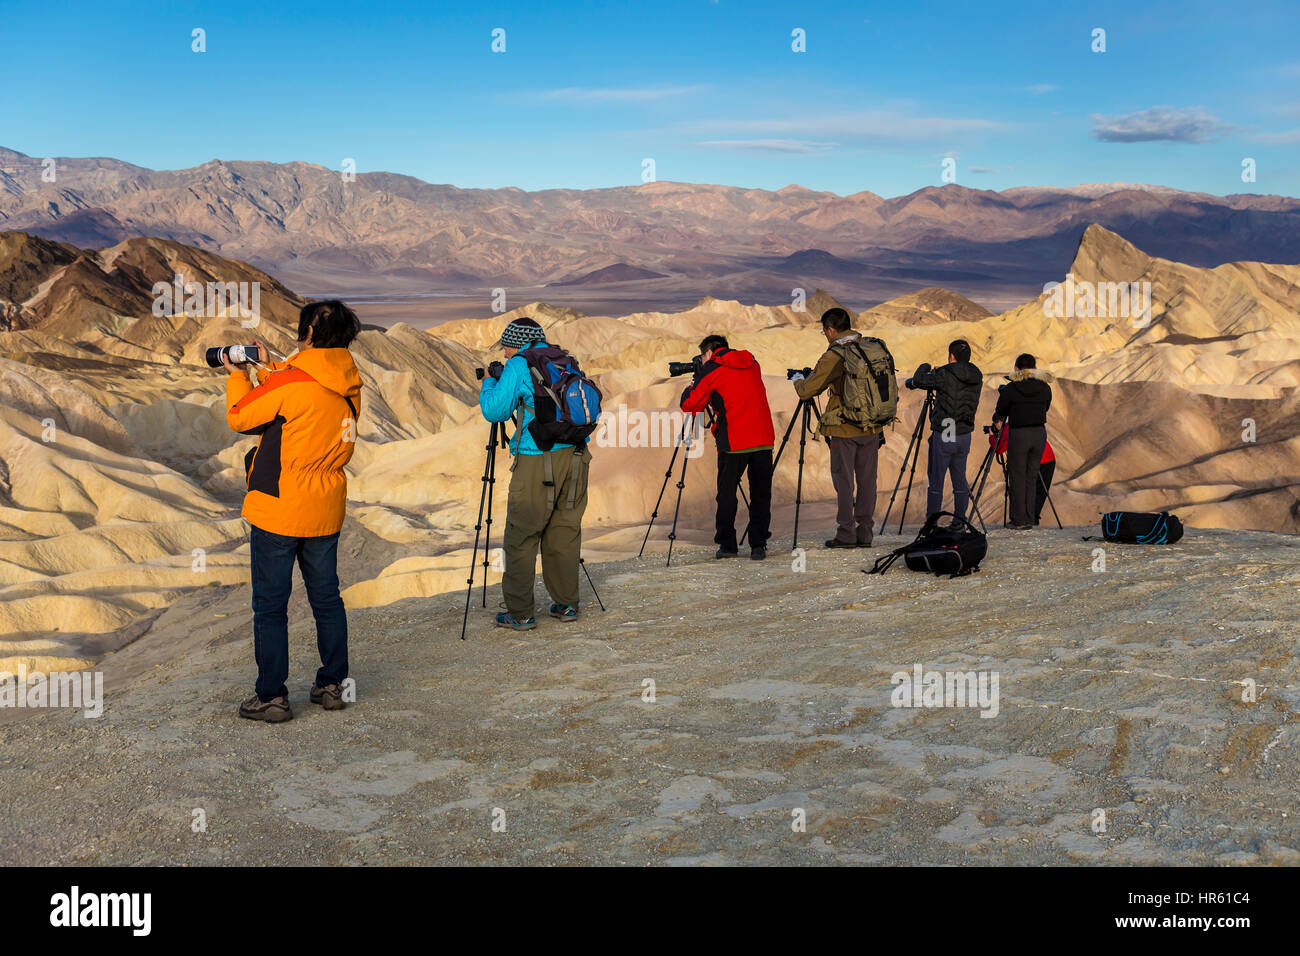 Les photographes, les touristes, Zabriskie Point Zabriskie point, Death Valley National Park, Death Valley, California, United States, Amérique du Nord Banque D'Images